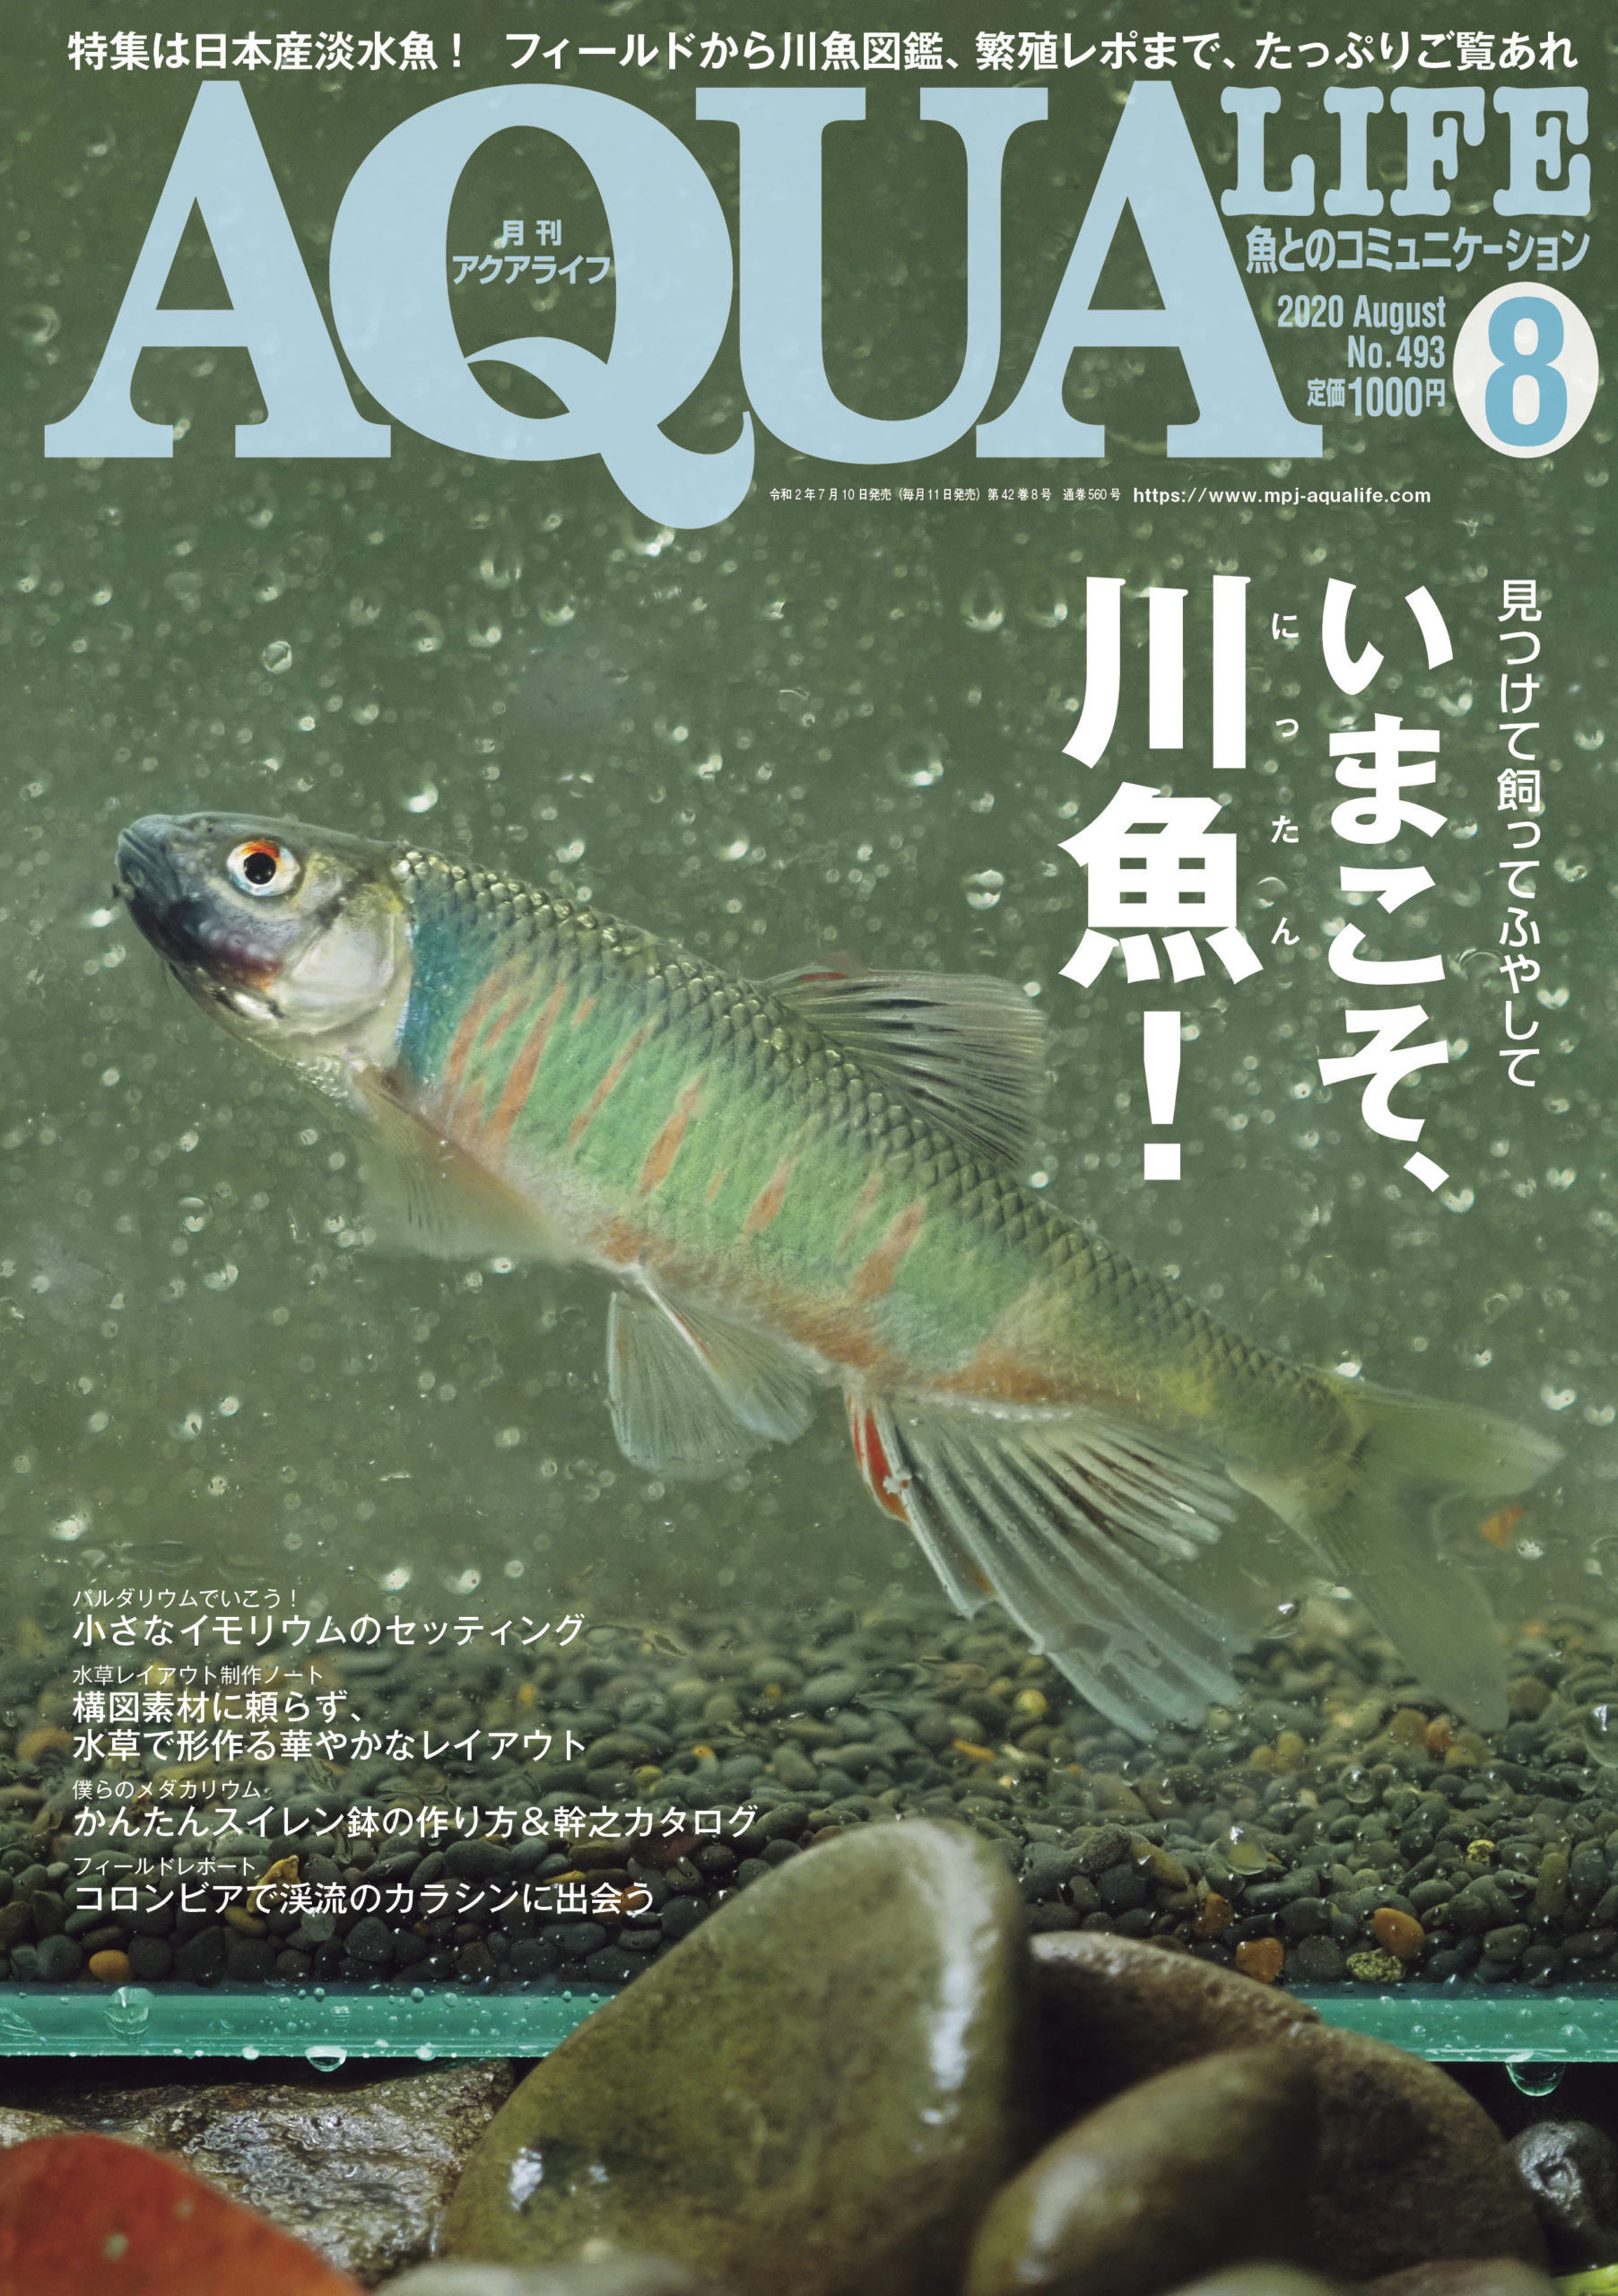 7 9 アクアライフ年8月号入荷のお知らせ ご購入はこちらのページからお願いします 観賞魚の通信販売 川村淡水魚販売